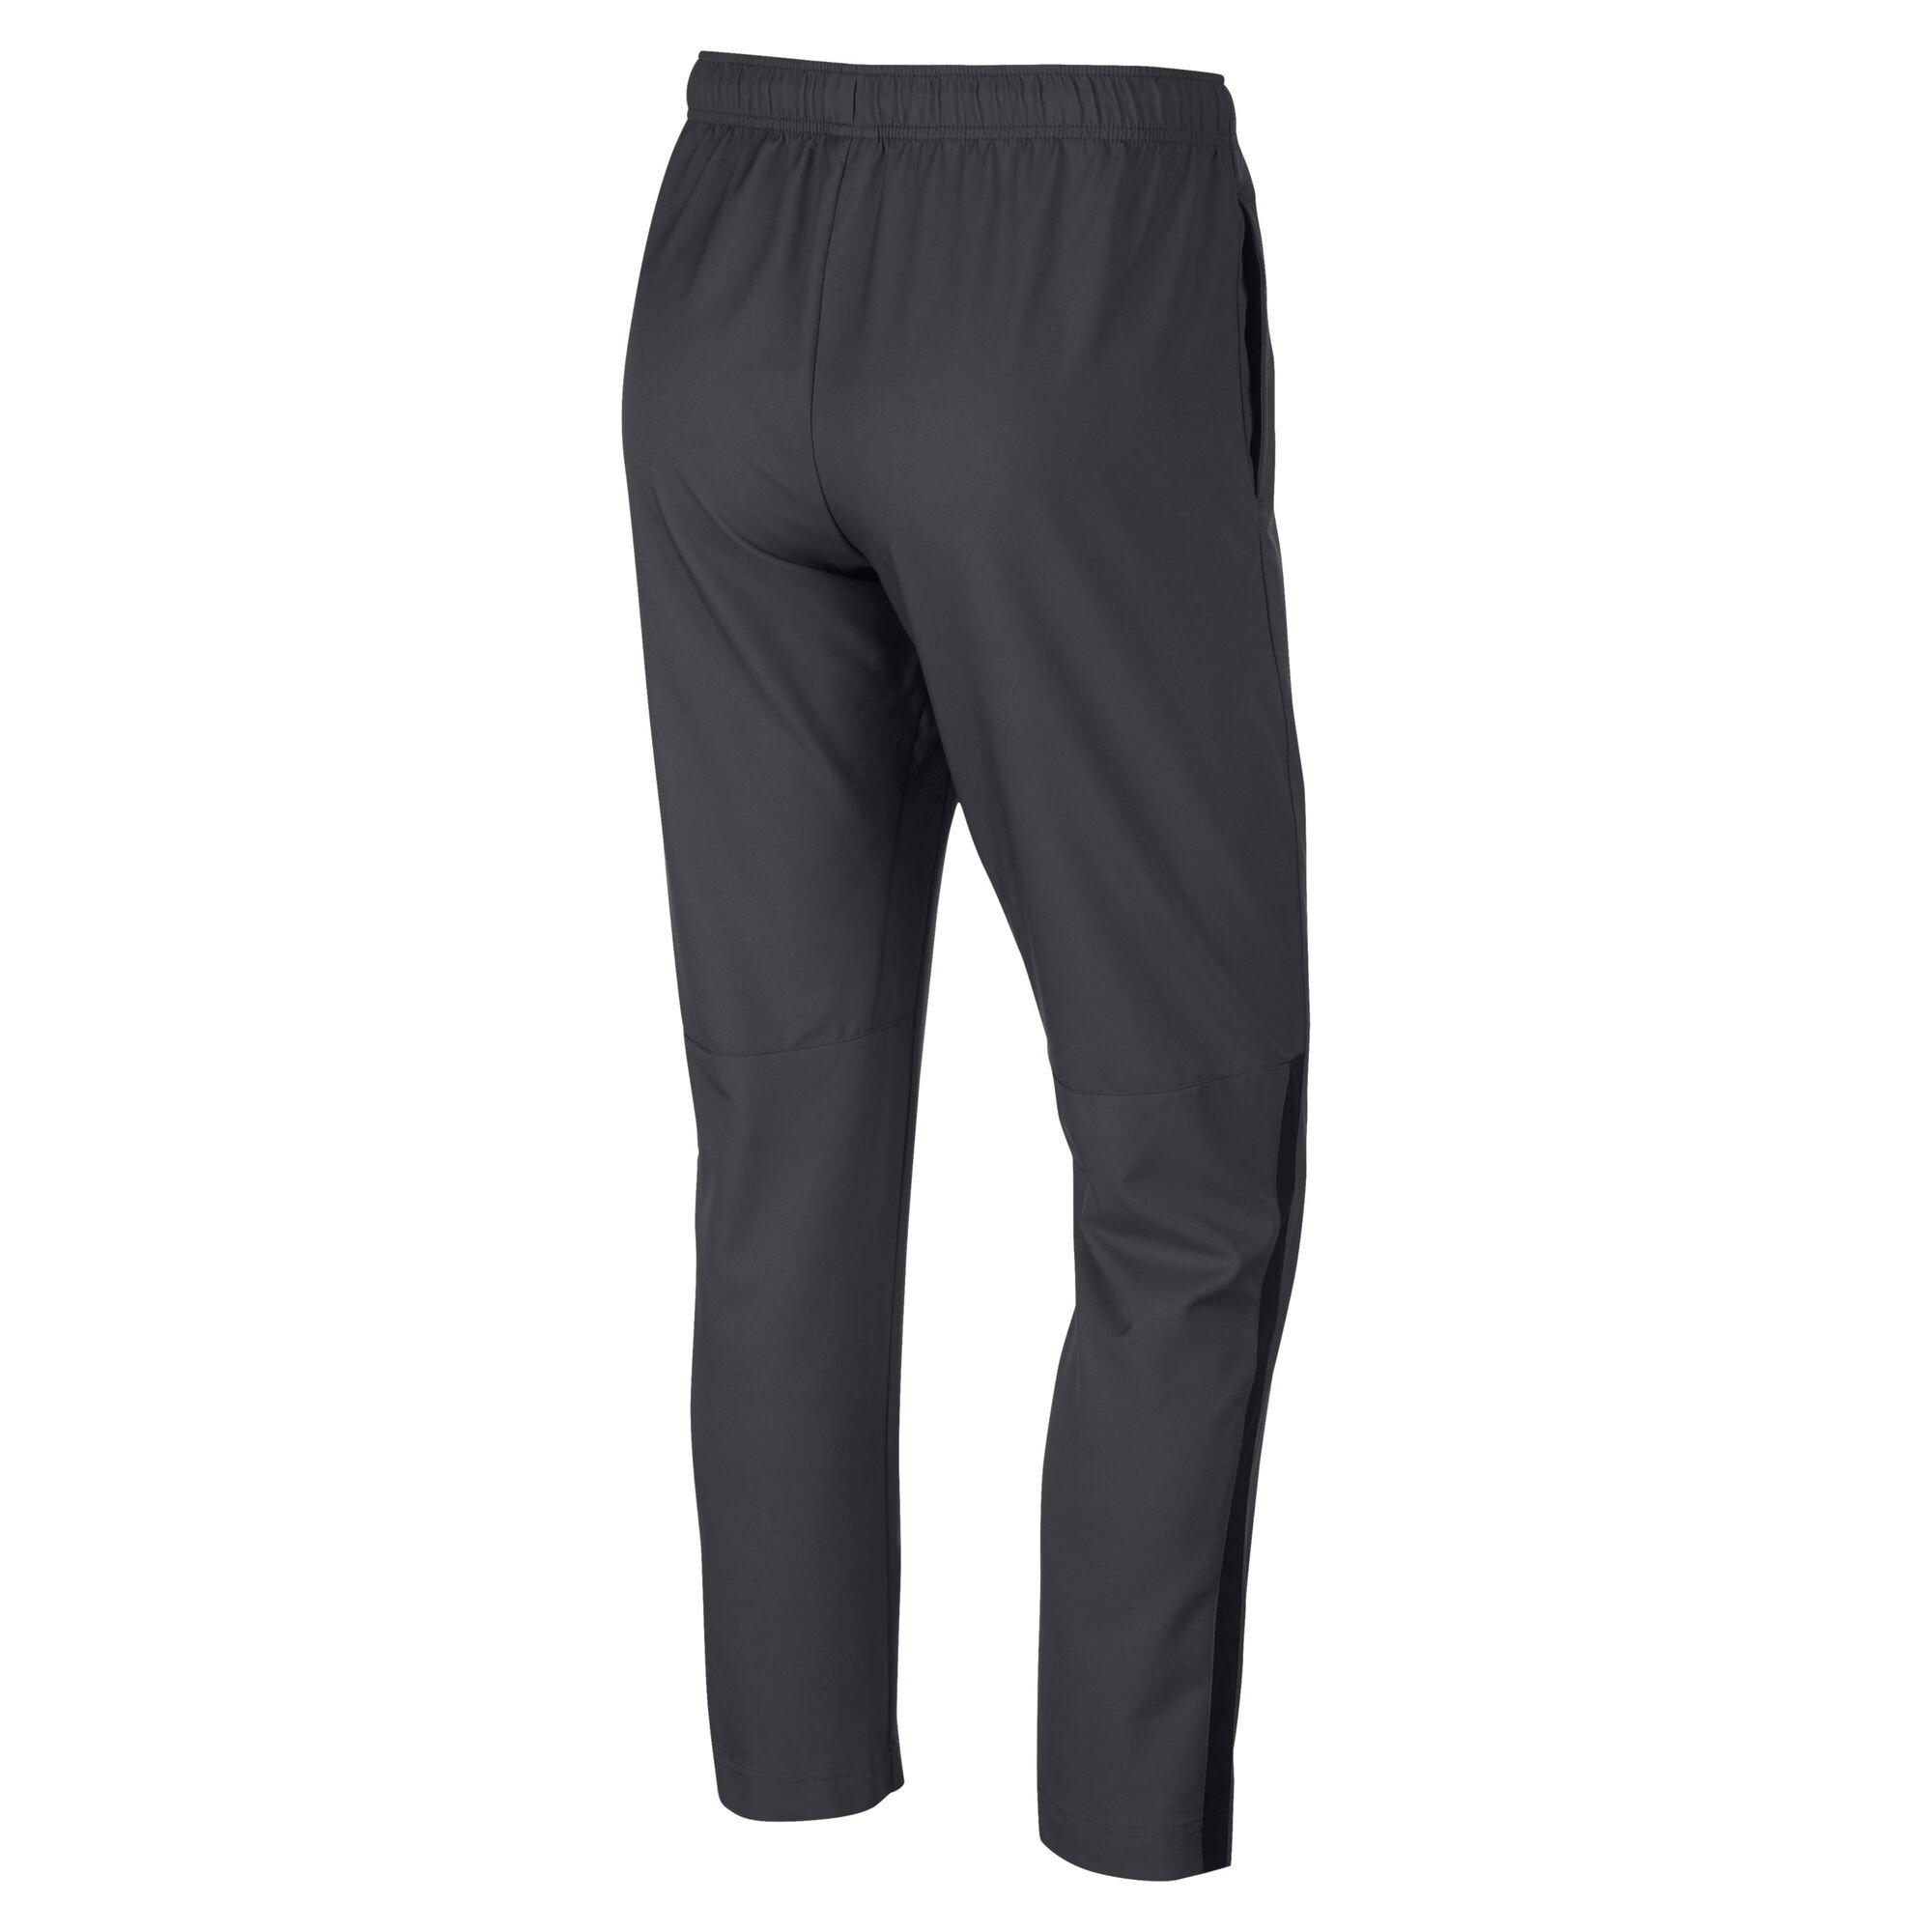 buy Nike Dry Training Pants Men - Dark Grey, Black online | Tennis-Point